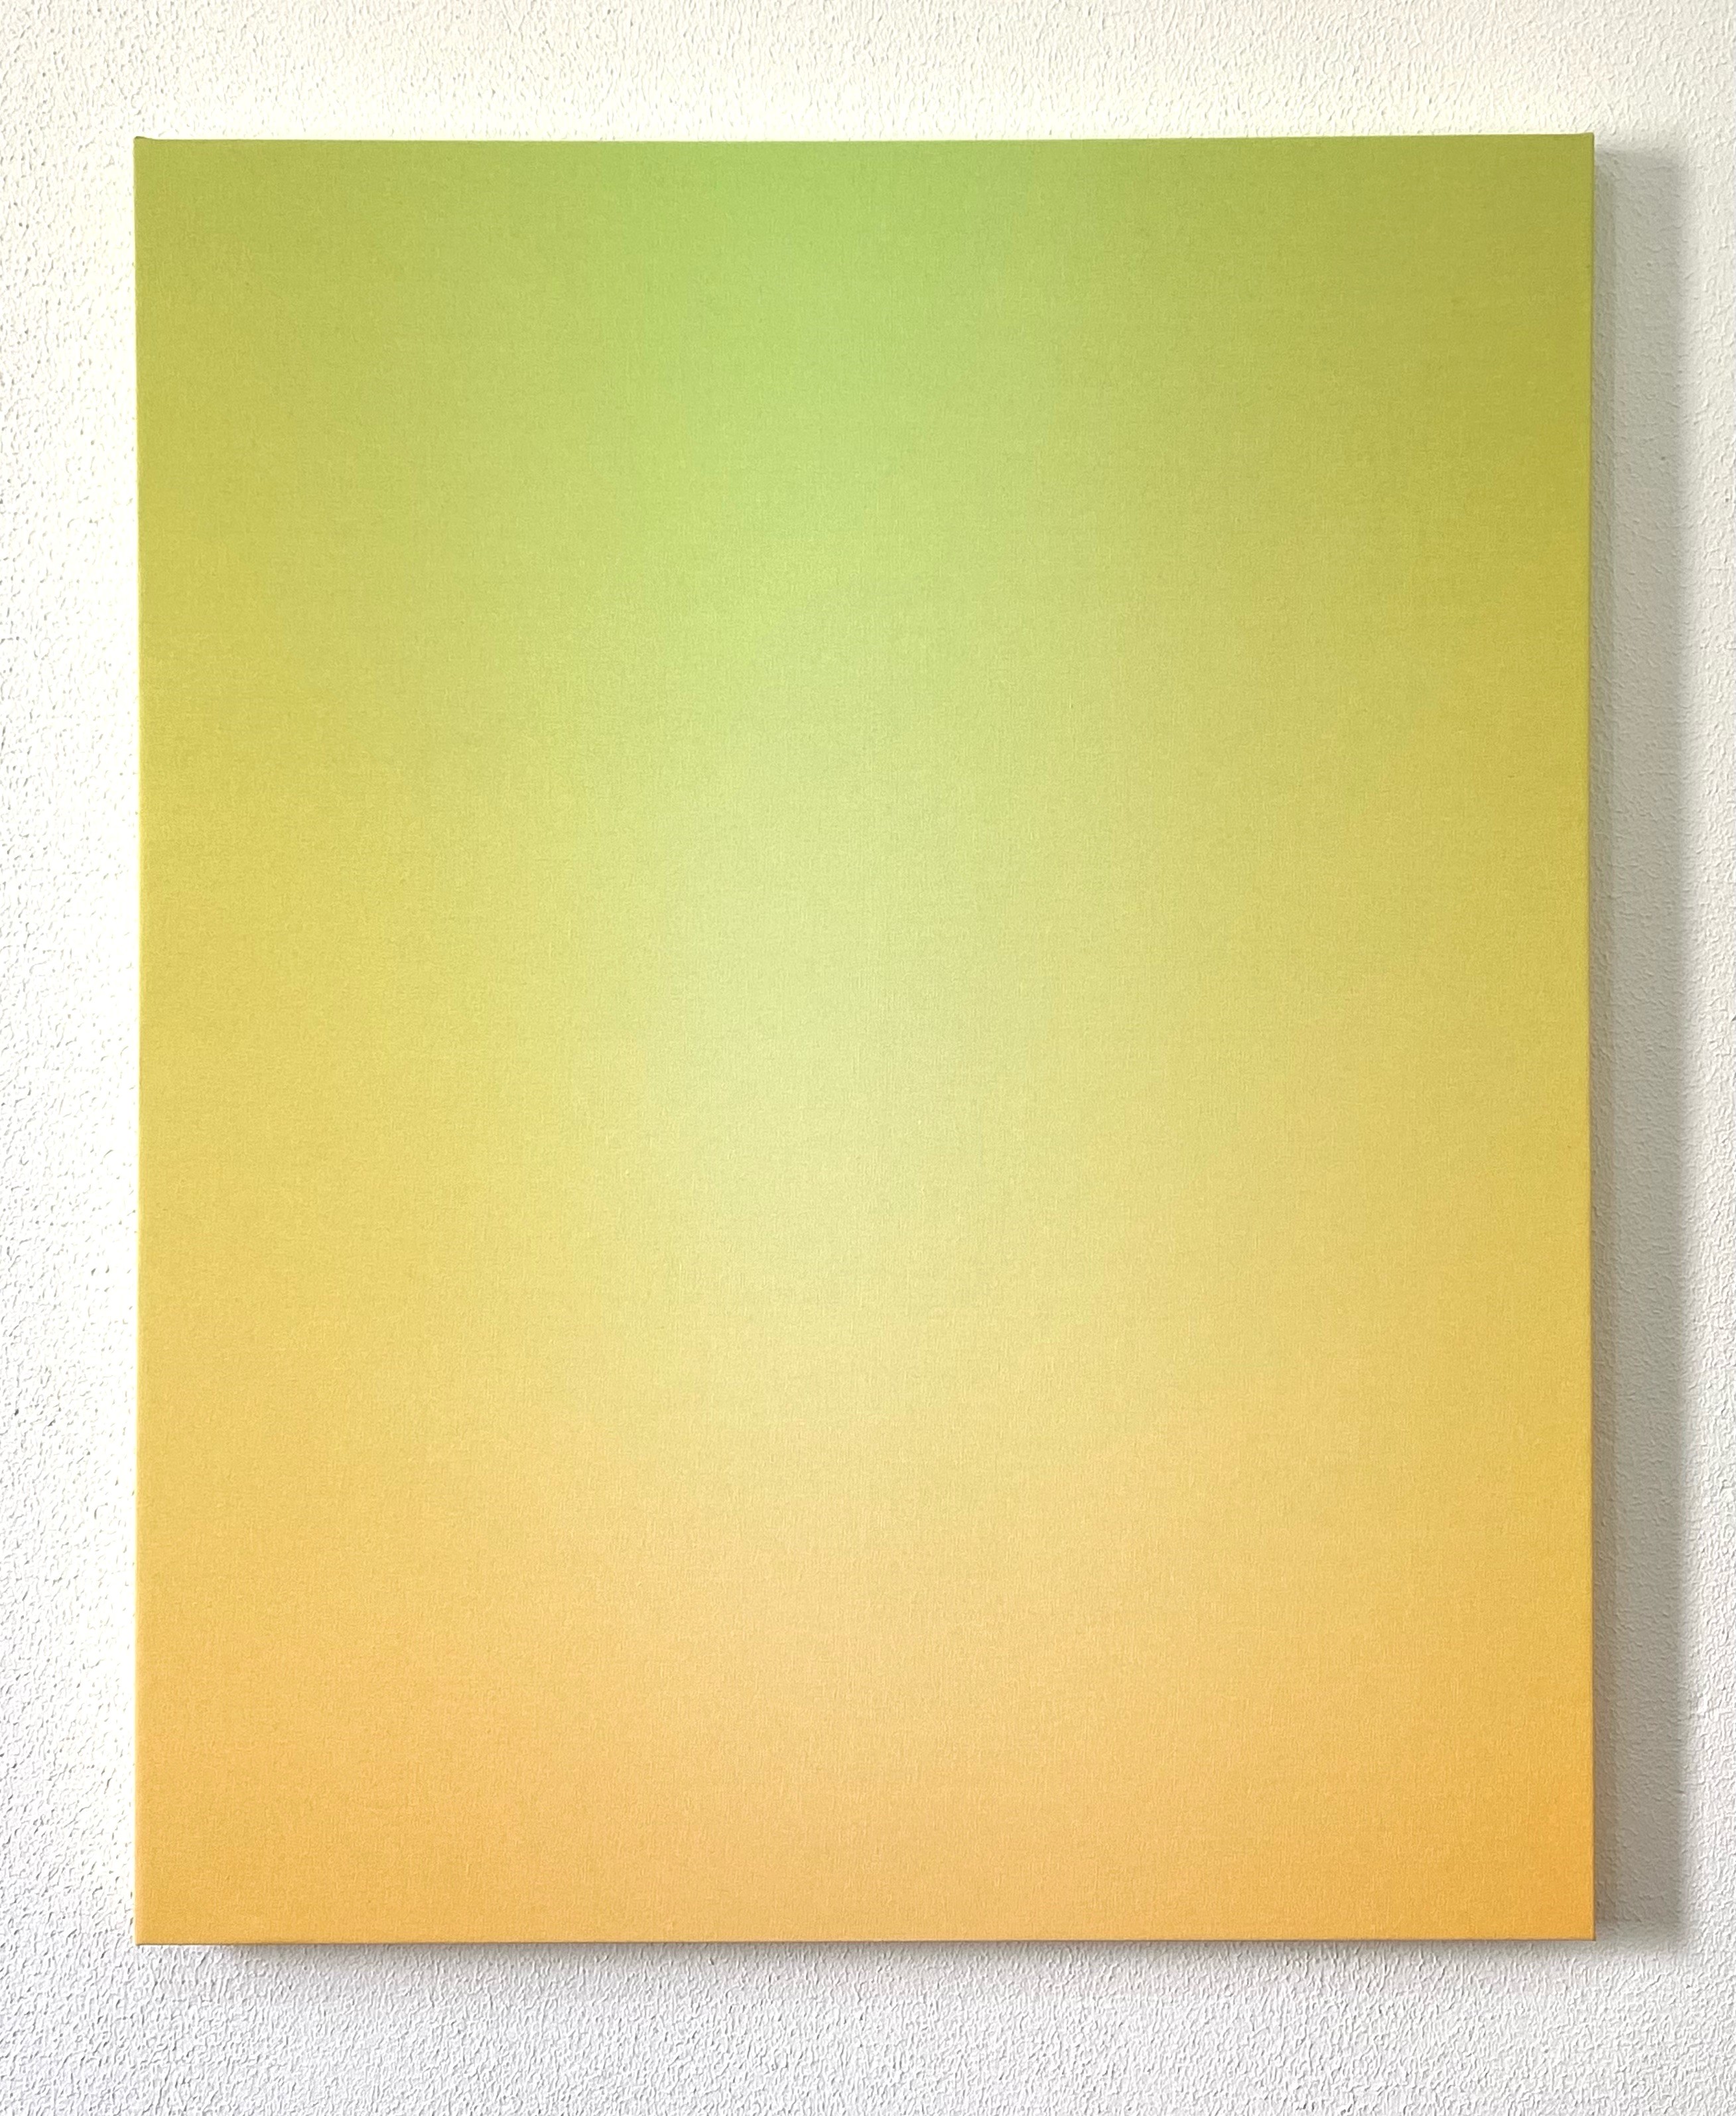 Eduardo Scatena, Sem título, Acrílica sobre tela, 105 x 85 cm, 2021